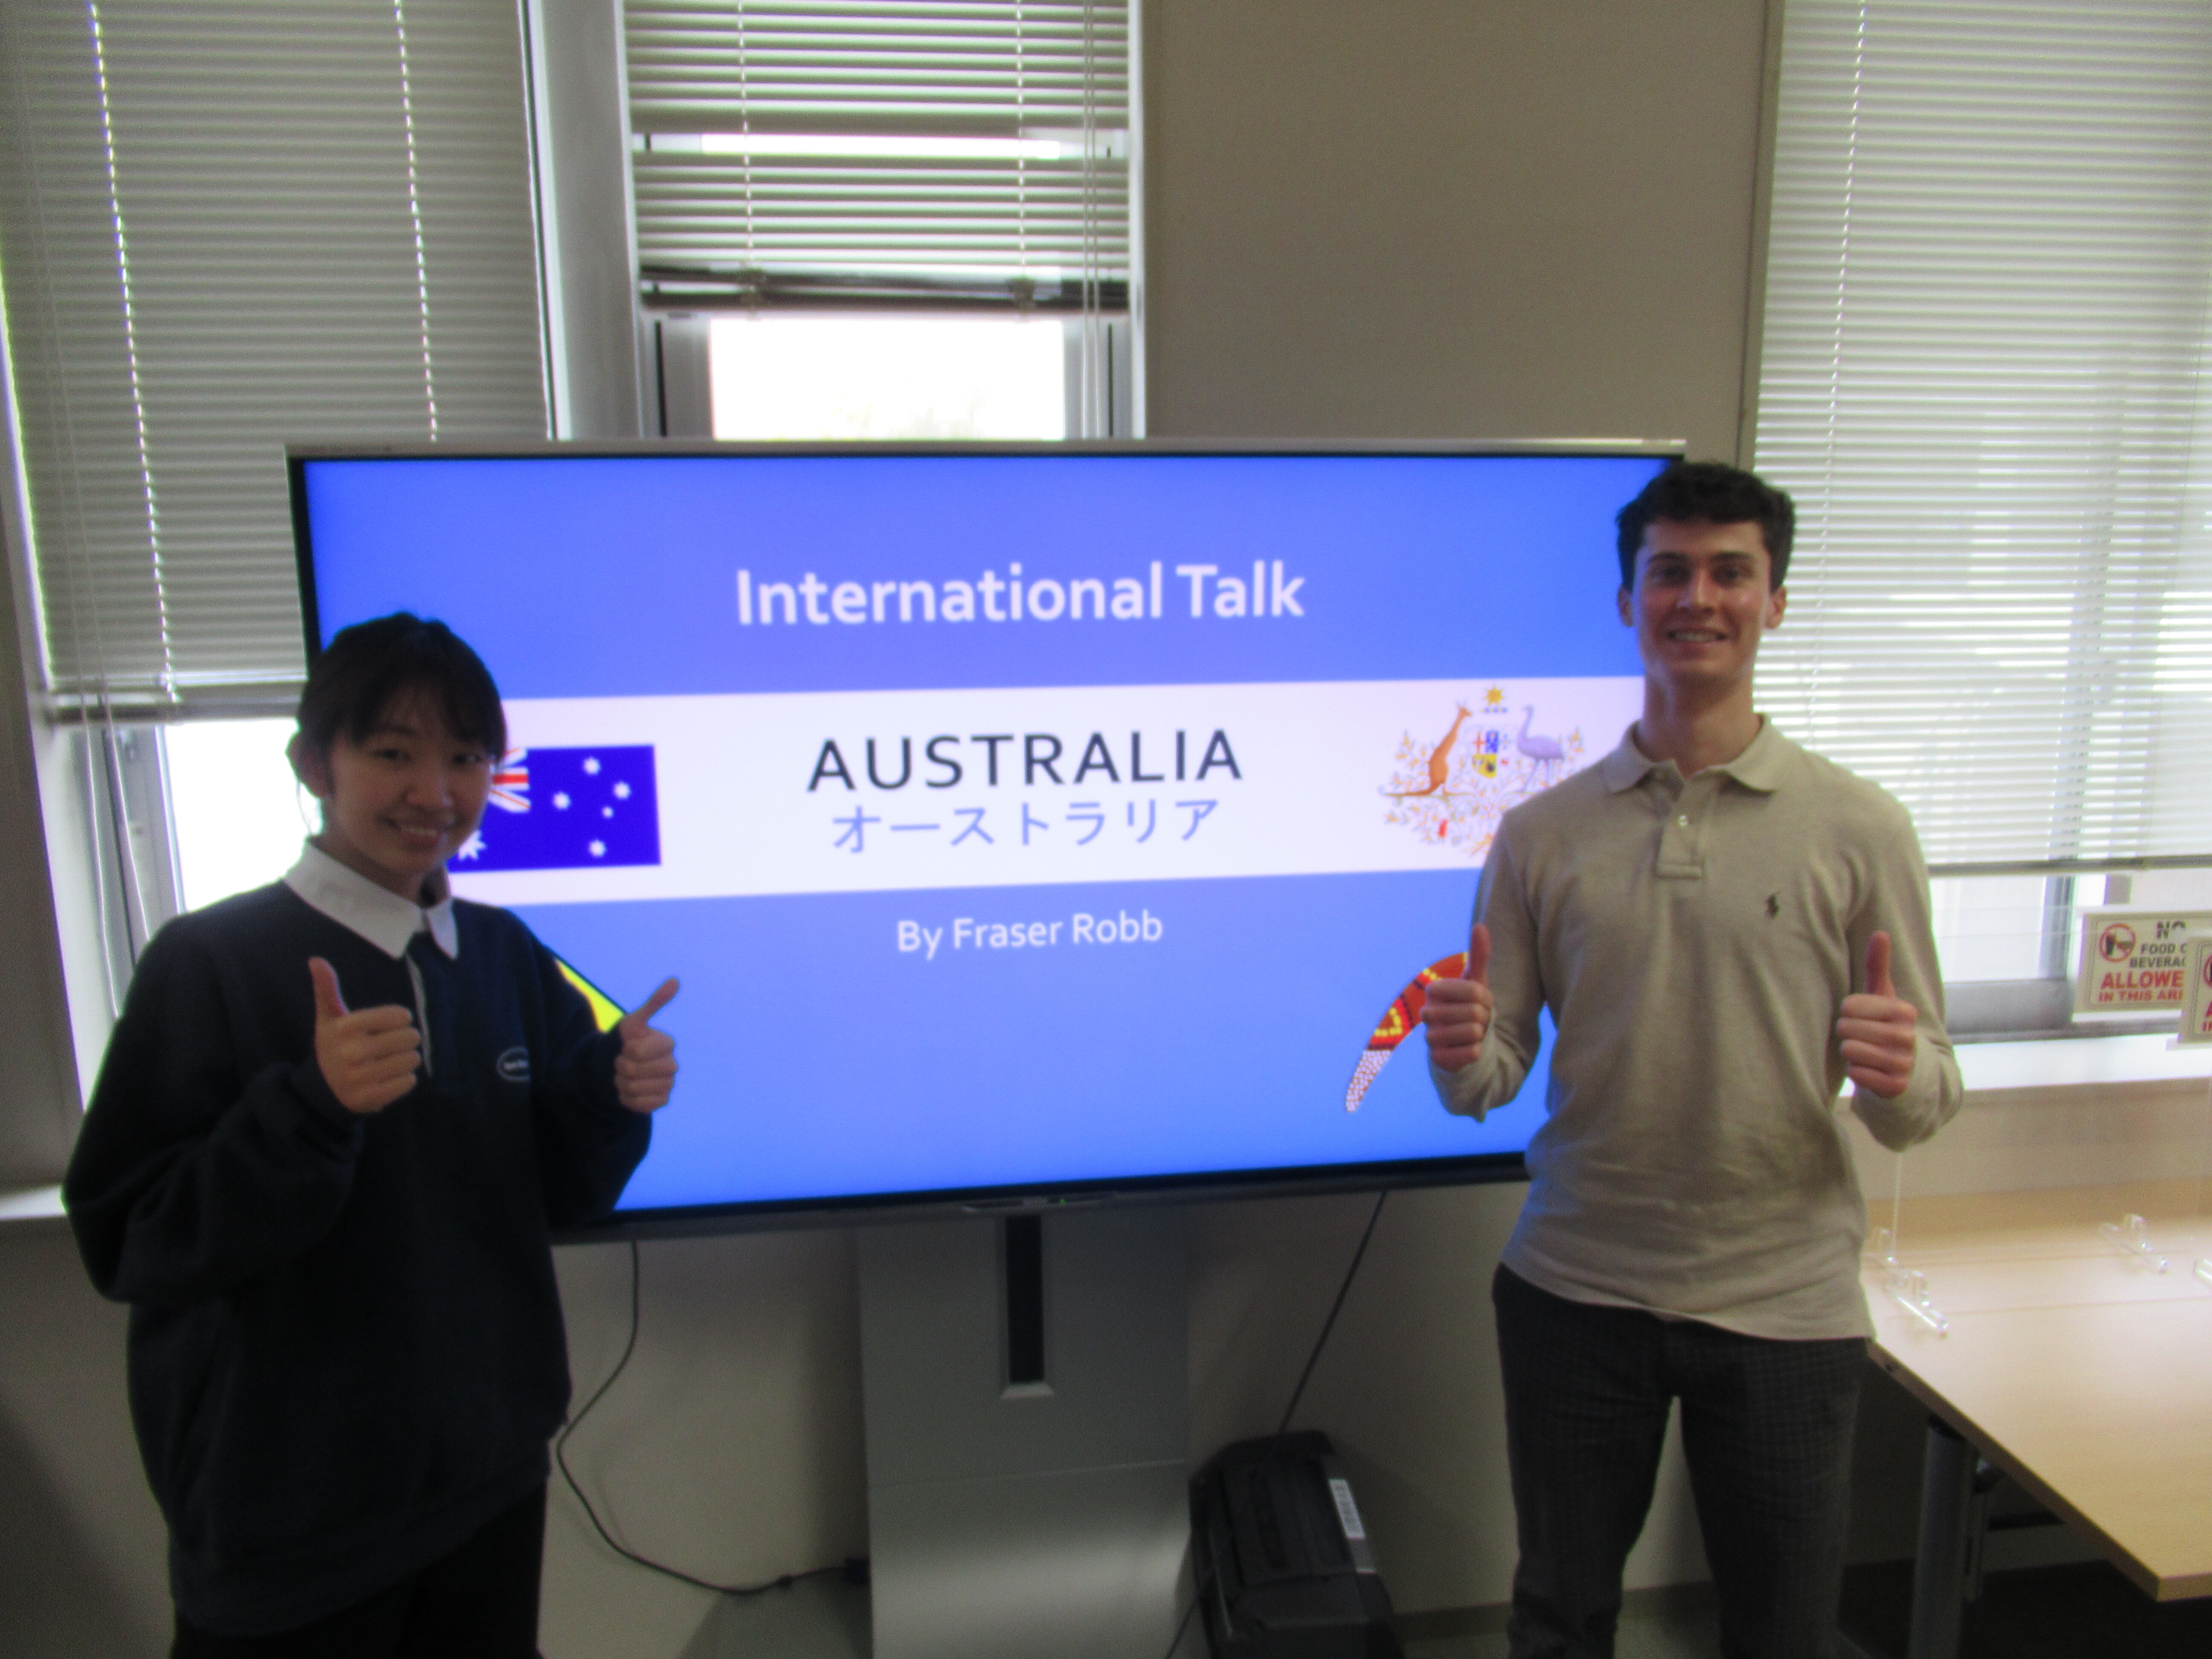 International Talk: Let’s learn about Australia online!